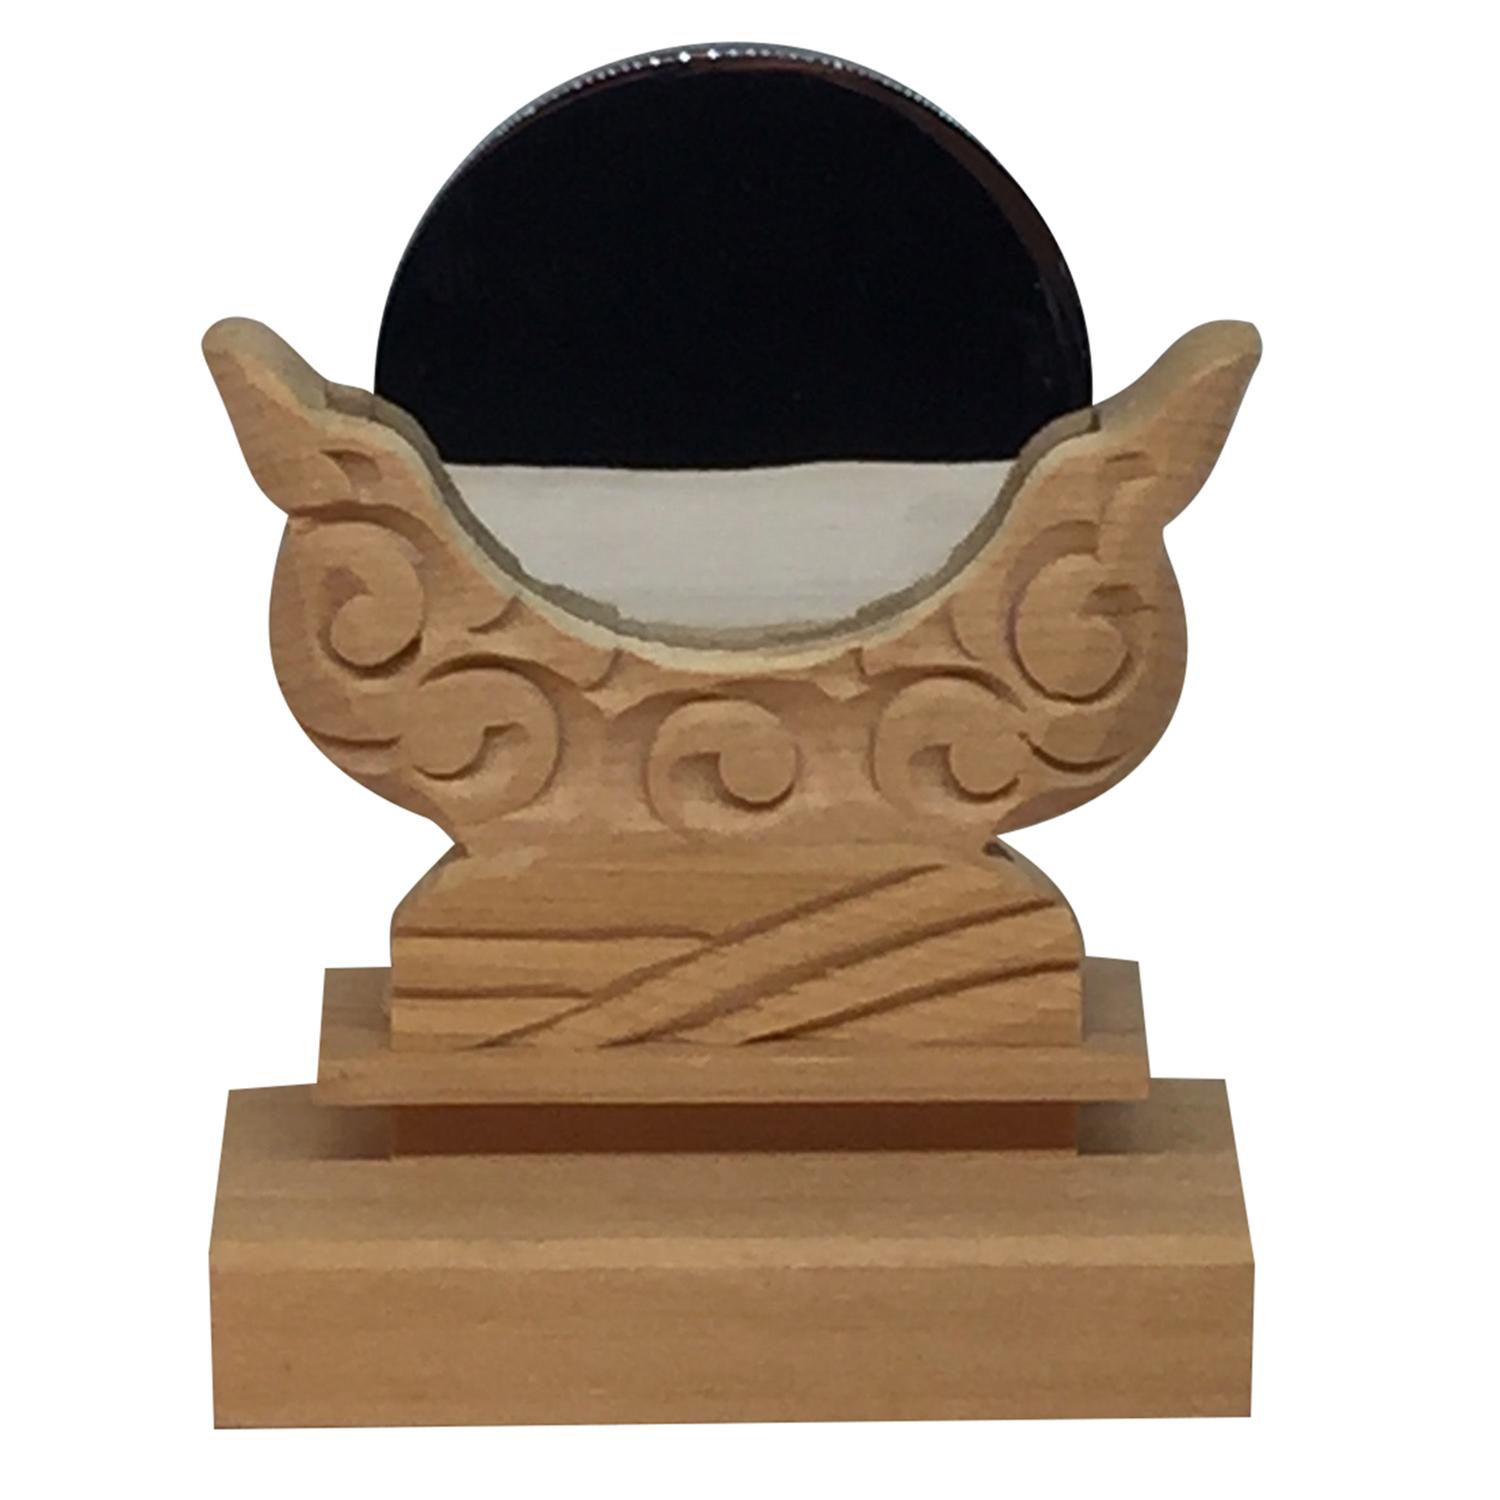 【送料無料】神棚の里 木曽桧神鏡 1.5寸 神具 神棚 日本製 職人彫り